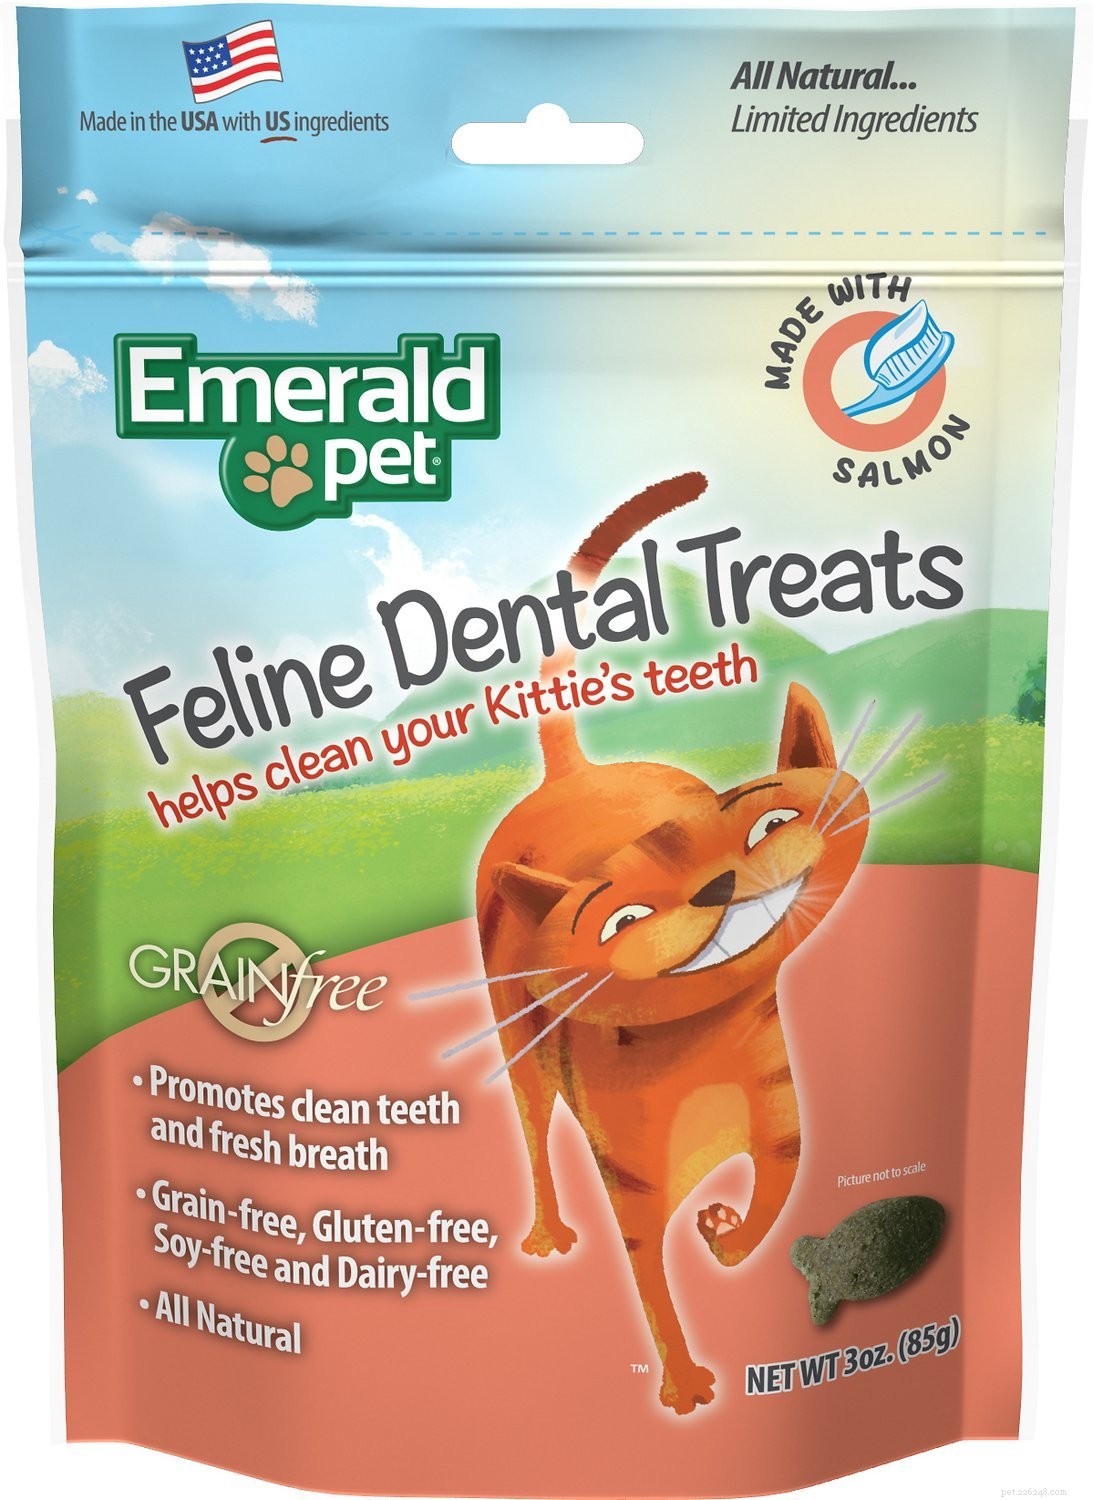 Meilleures friandises dentaires pour chats